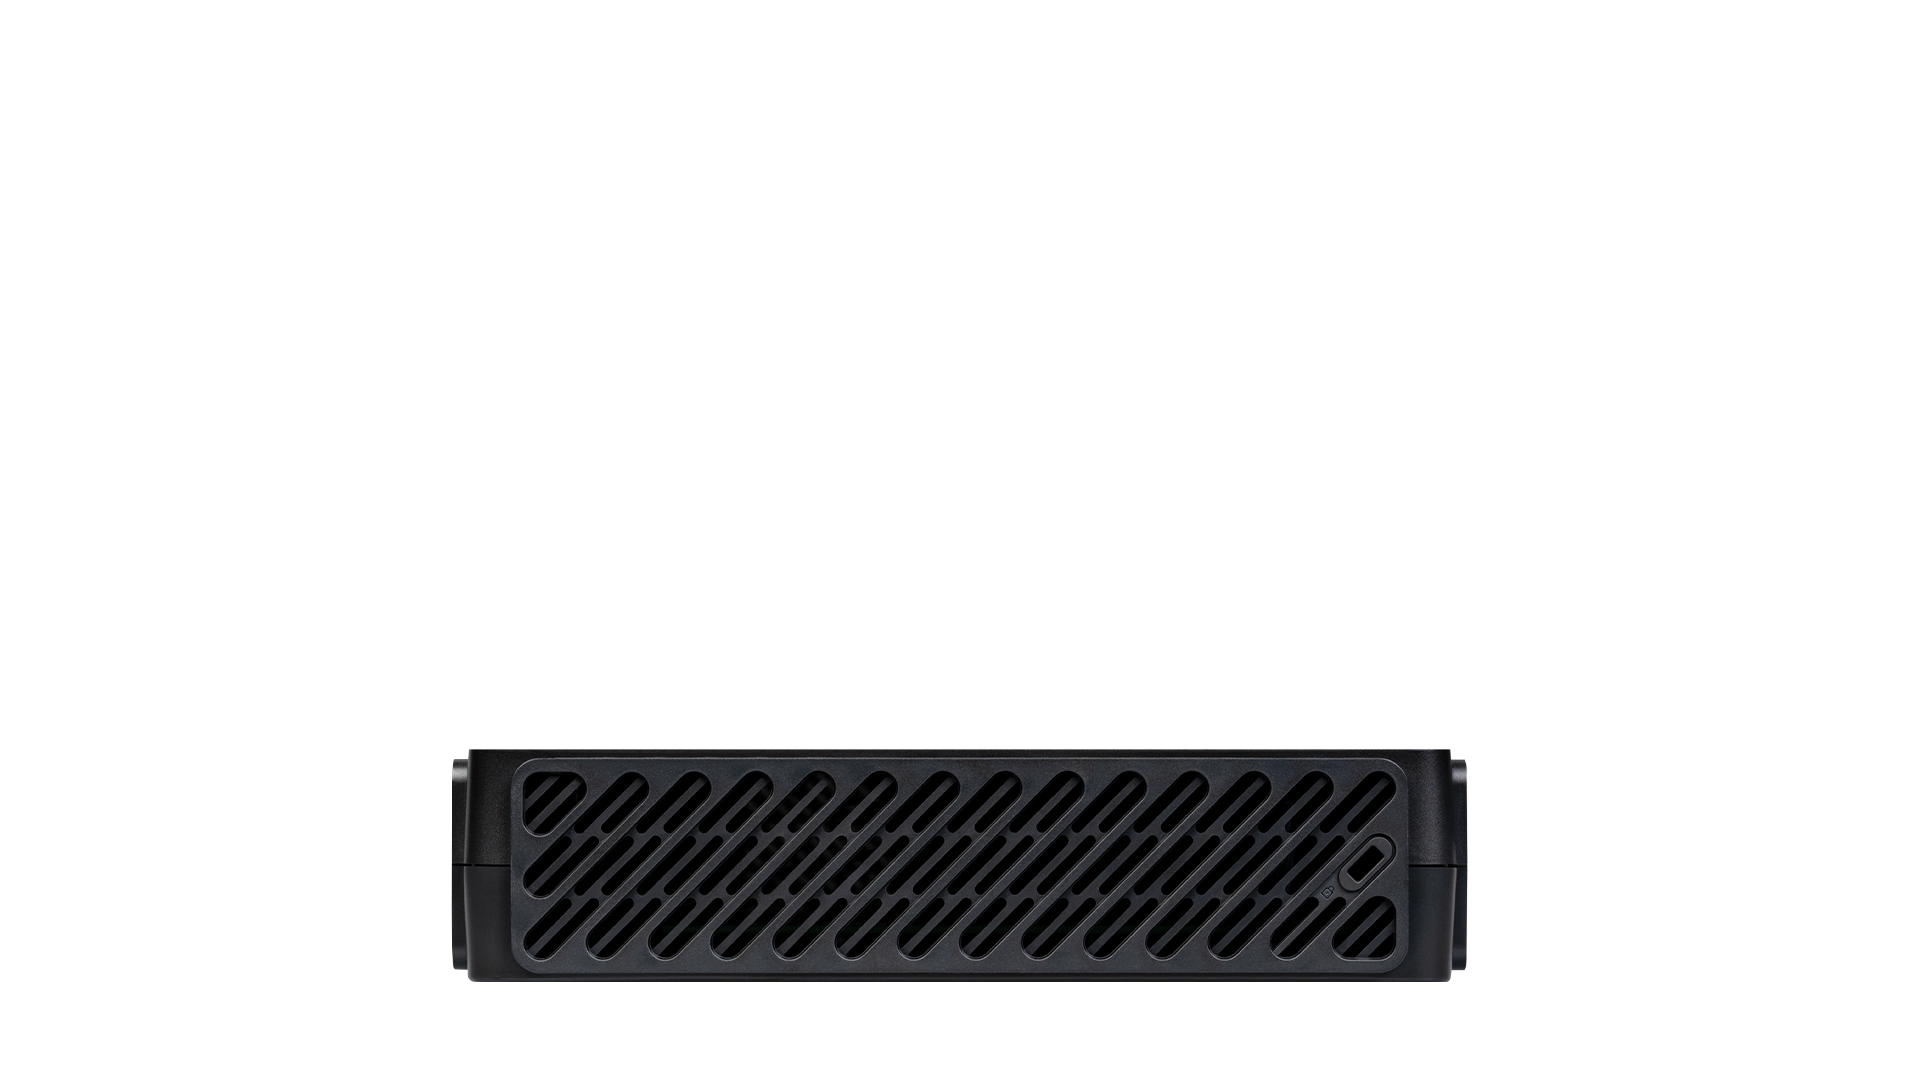 LANCOM 62153 VPN-Gateway, Dual-WAN-Unterstützung, PoE-fähig, Rackmontage möglich, 2,4 GHz und 5 GHz